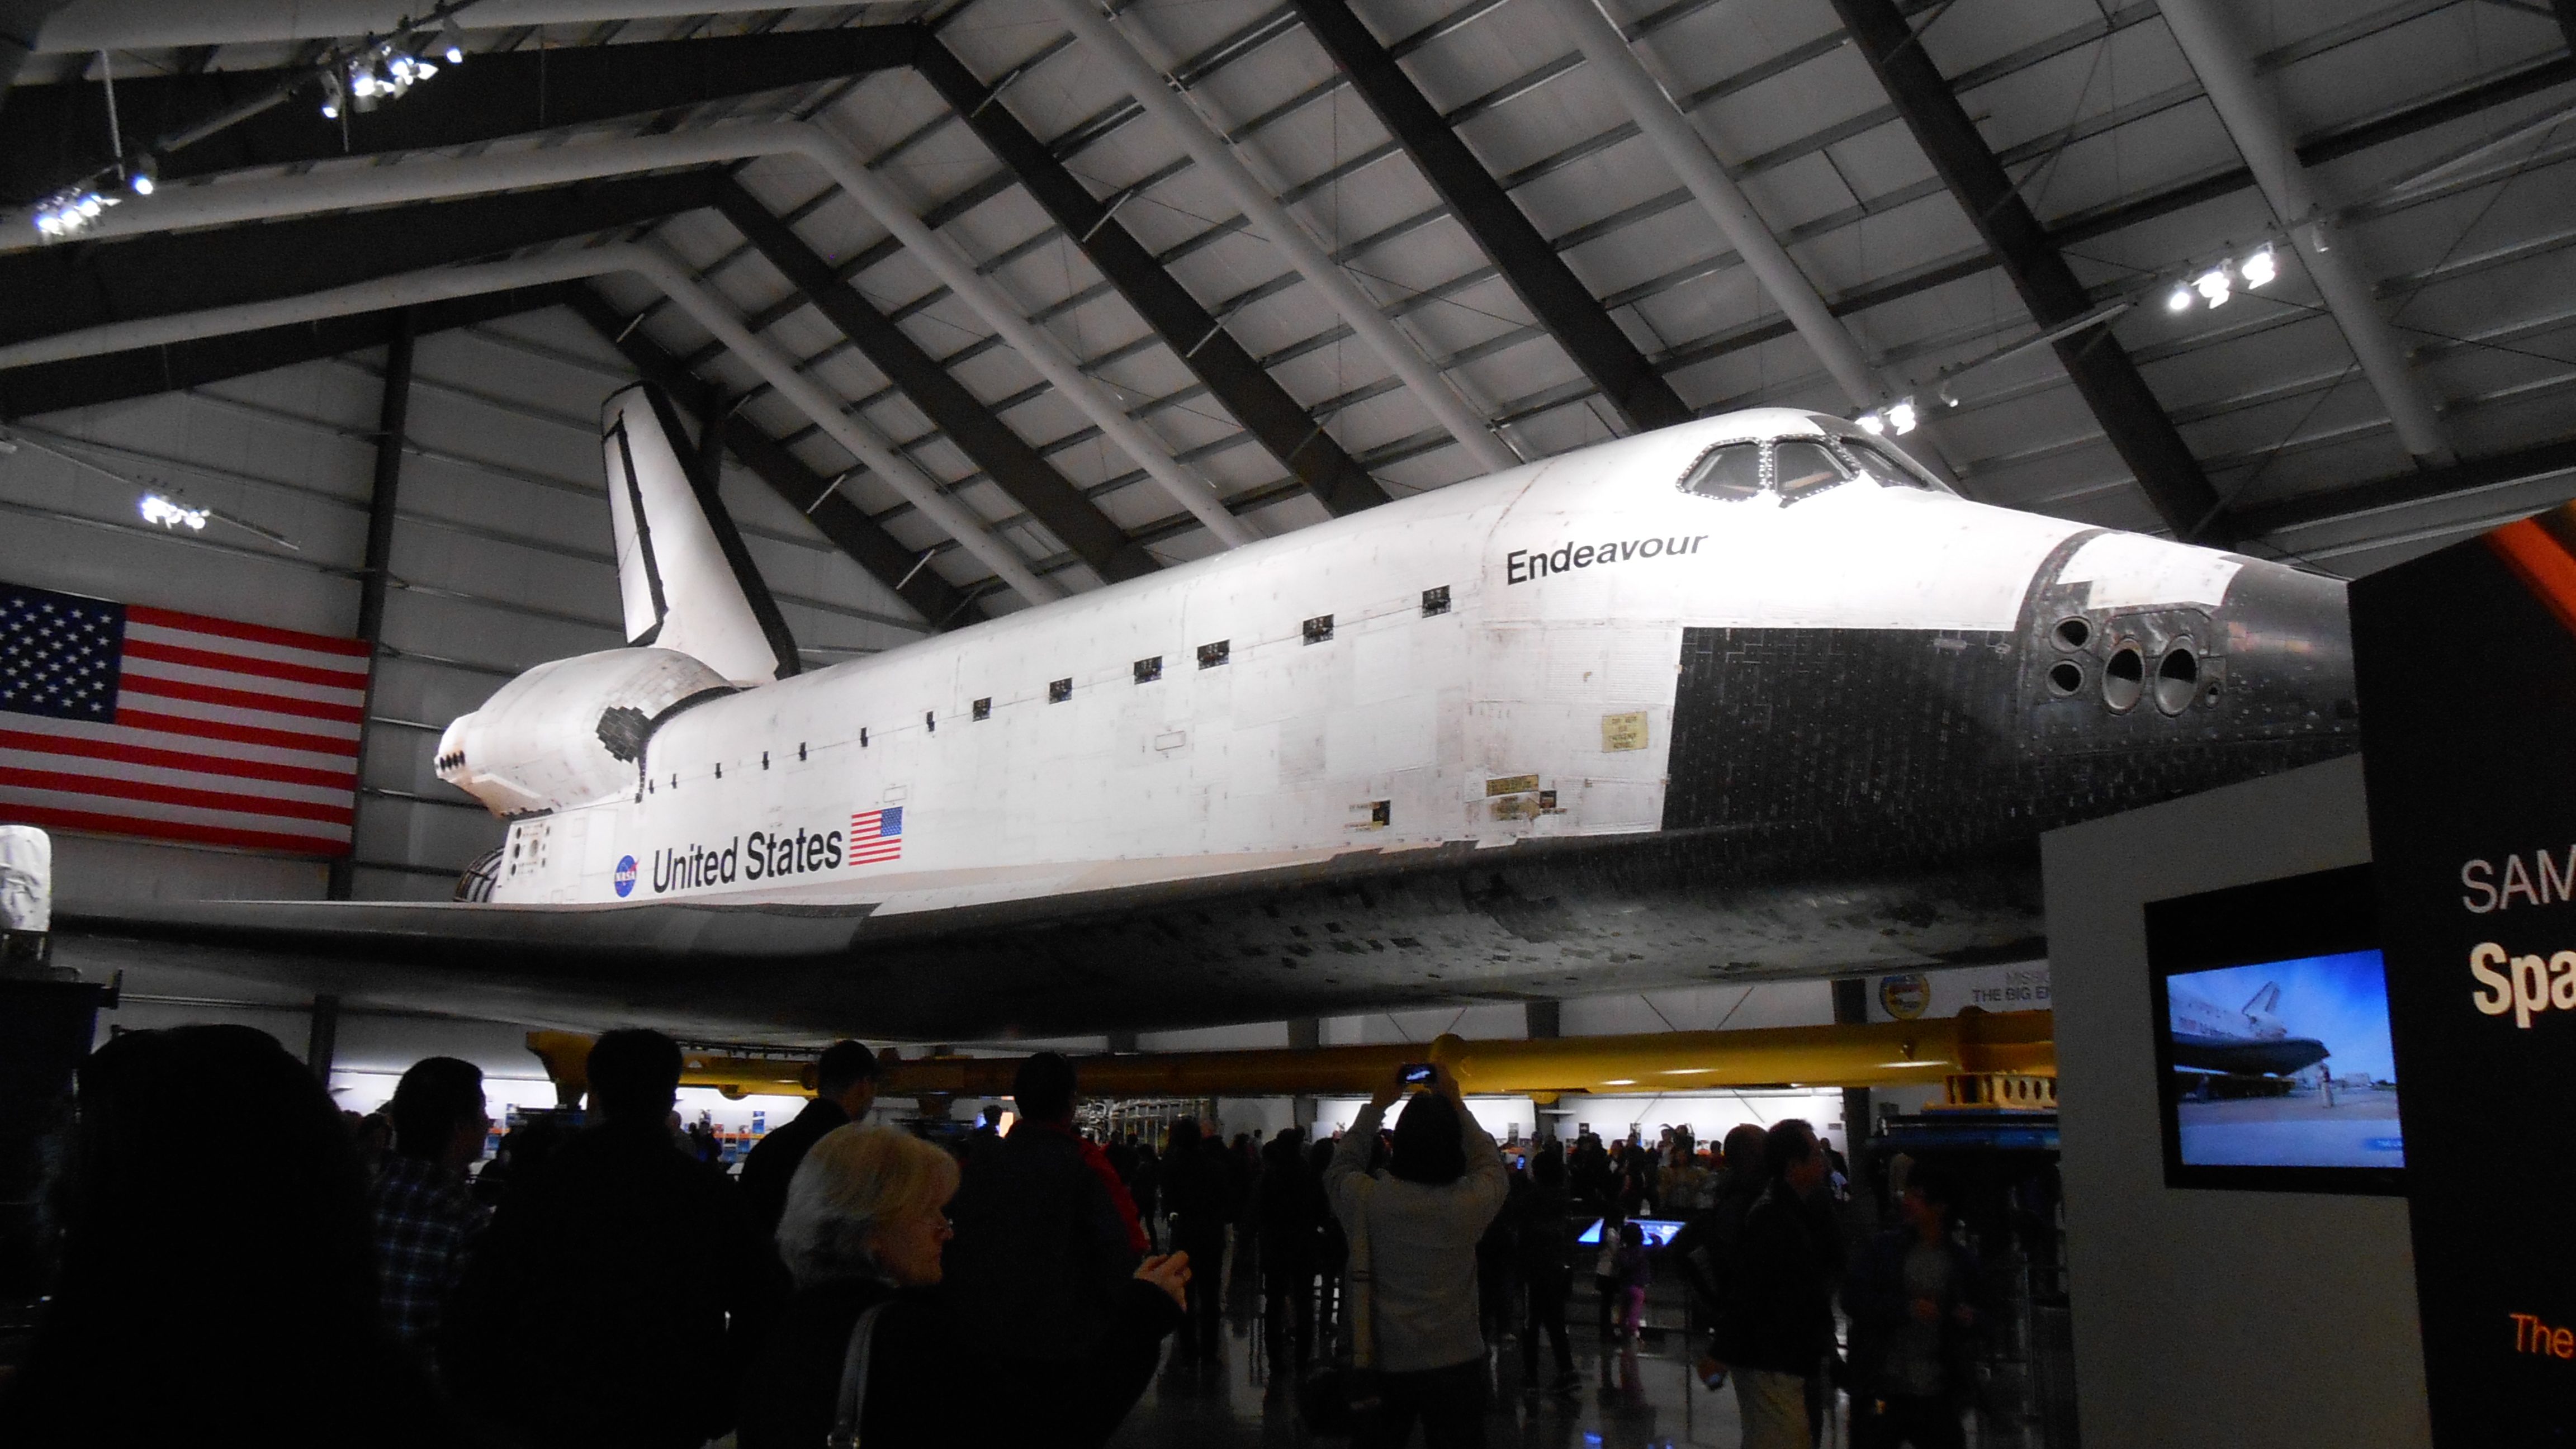 Space Shuttle Endeaver